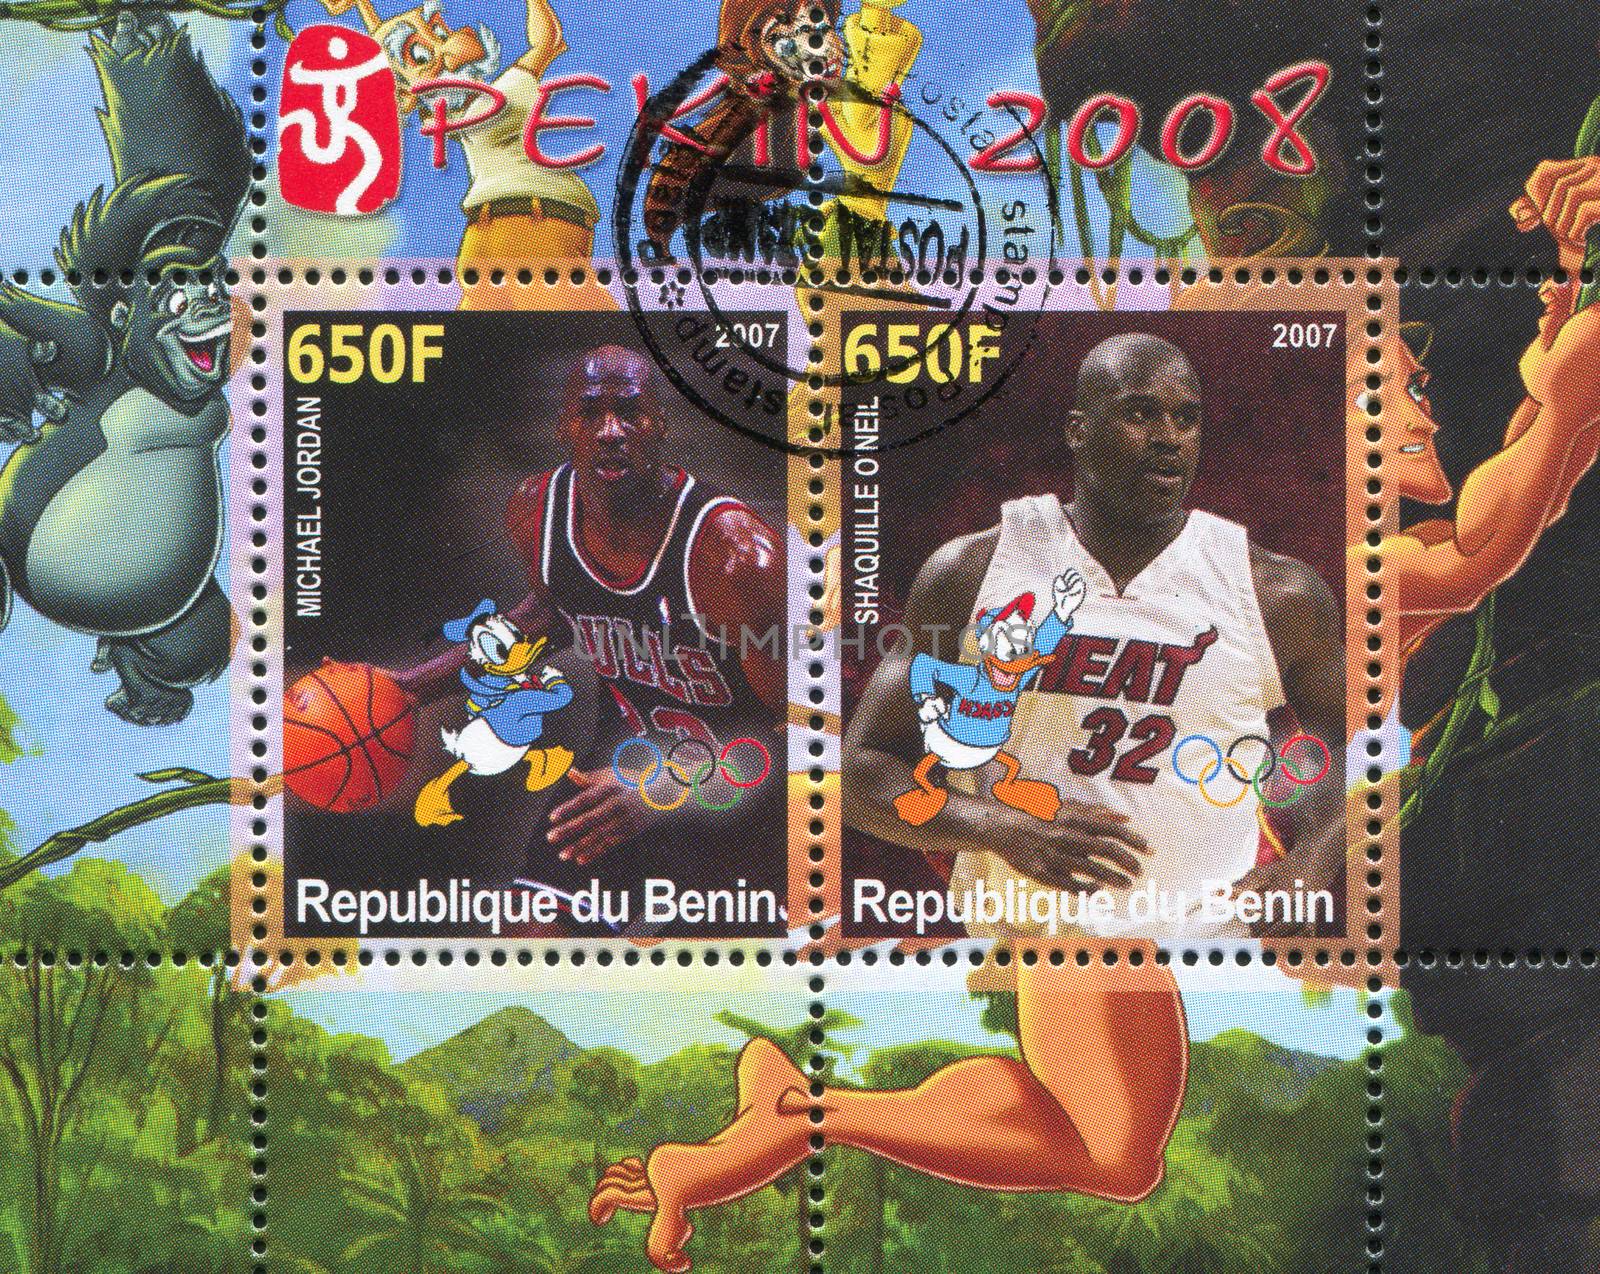 BENIN - CIRCA 2007: stamp printed by Benin, shows Michael Jordan, Disney Caharacter and Olympic Rings, circa 2007